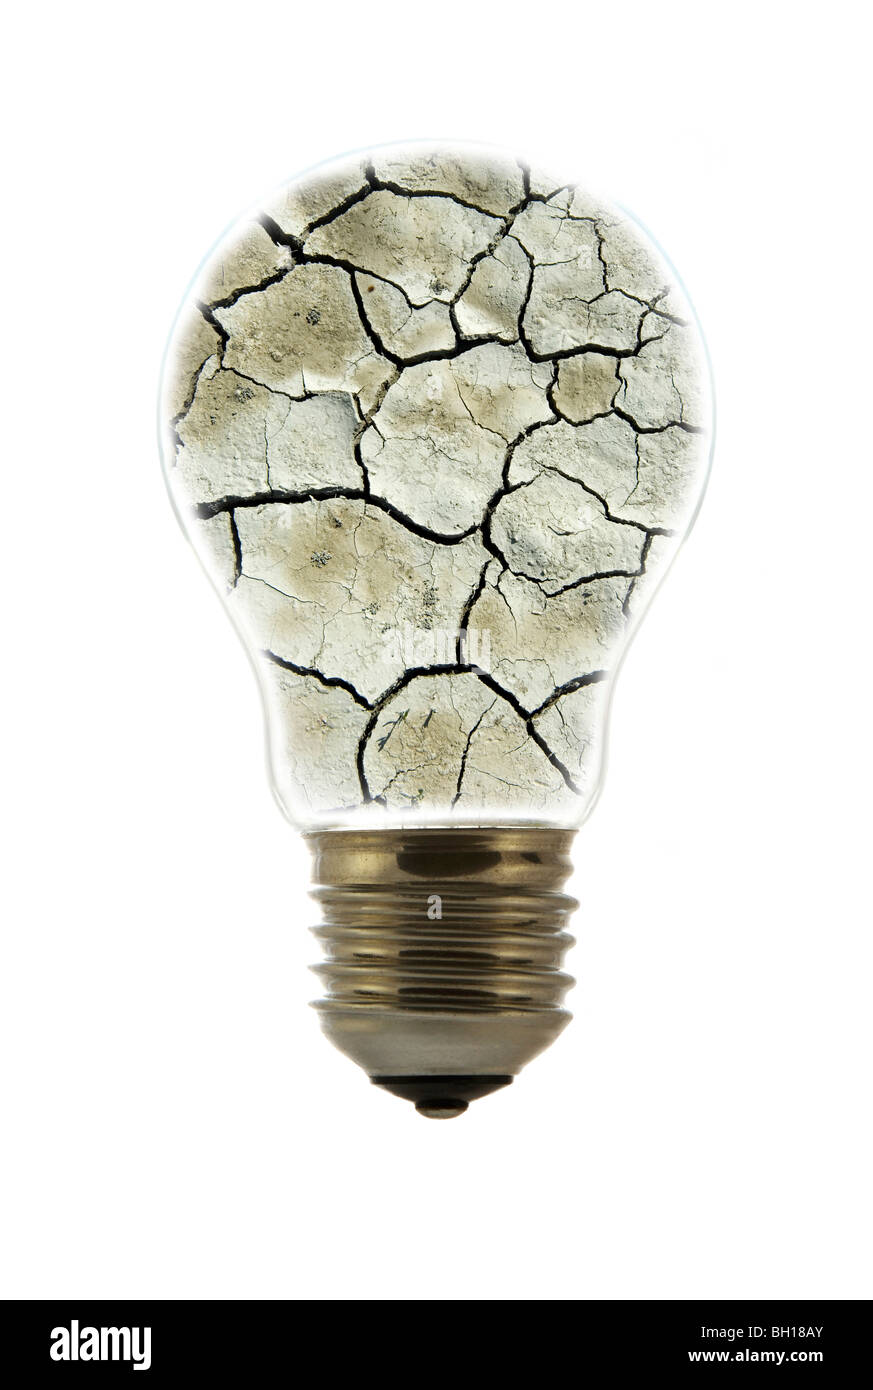 Massa rotto dalla siccità all'interno della lampada ad incandescenza / lampadina contro uno sfondo bianco Foto Stock